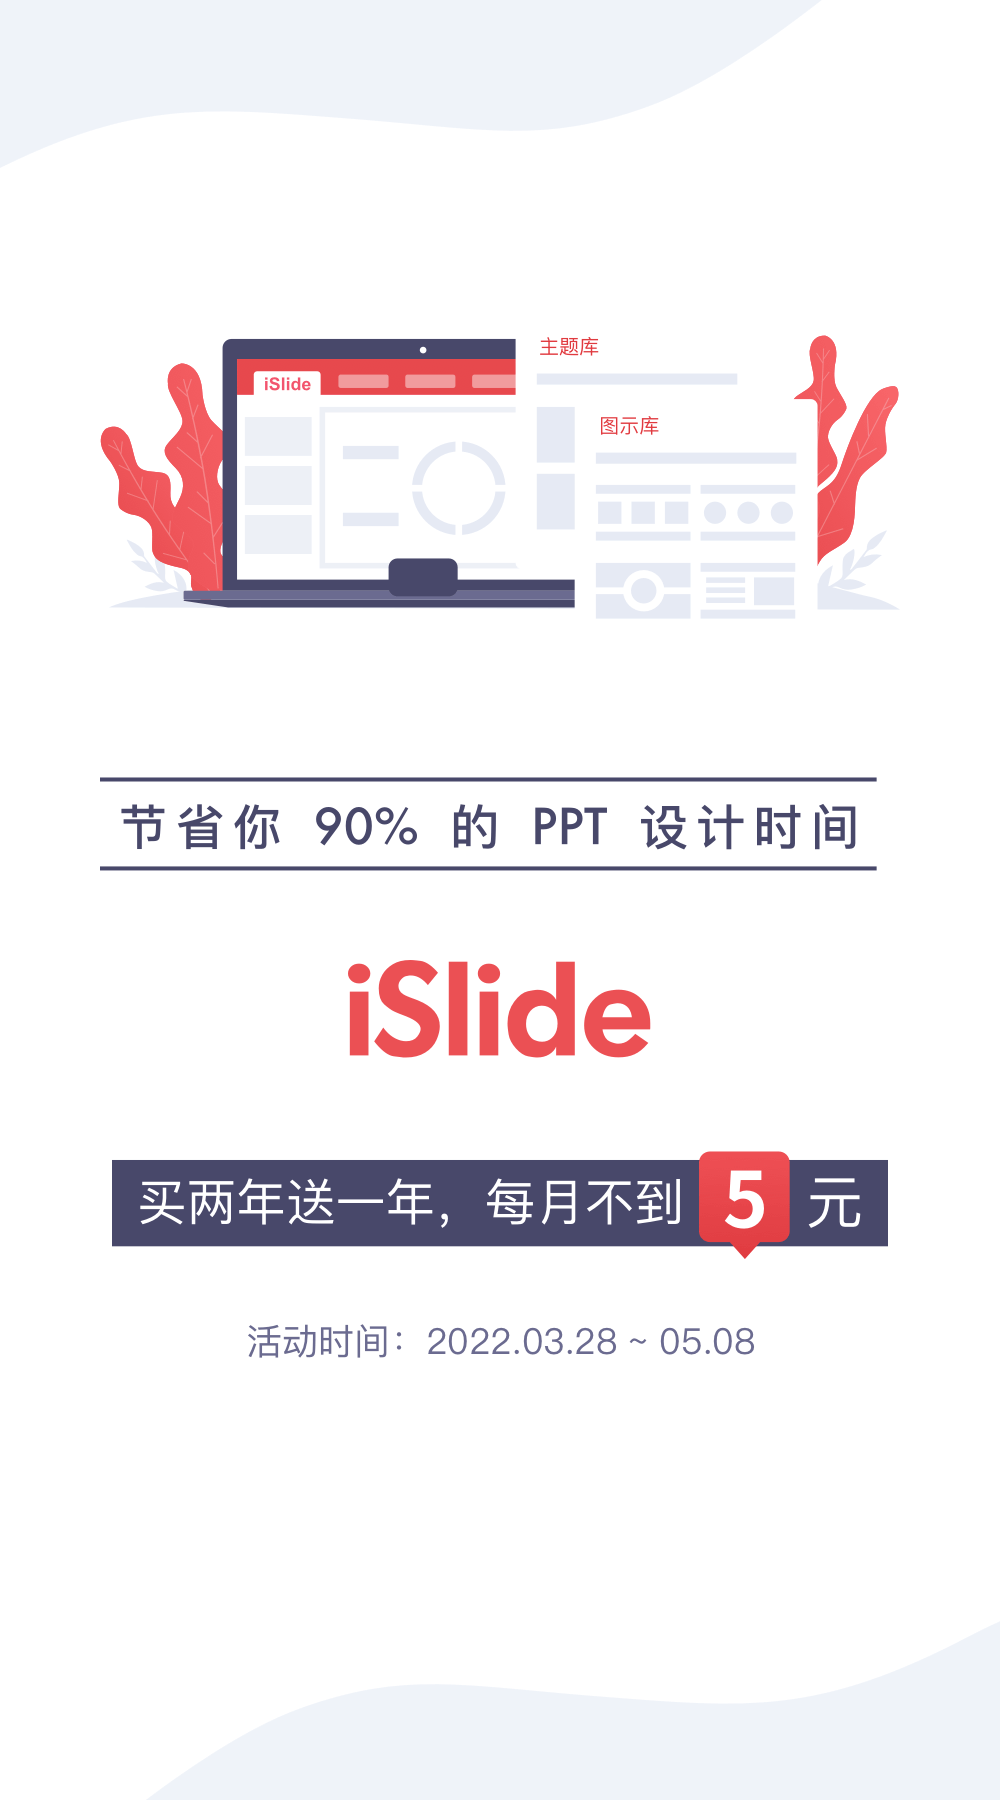 【正版特惠】Office设计美化插件 iSlide，6周年回馈